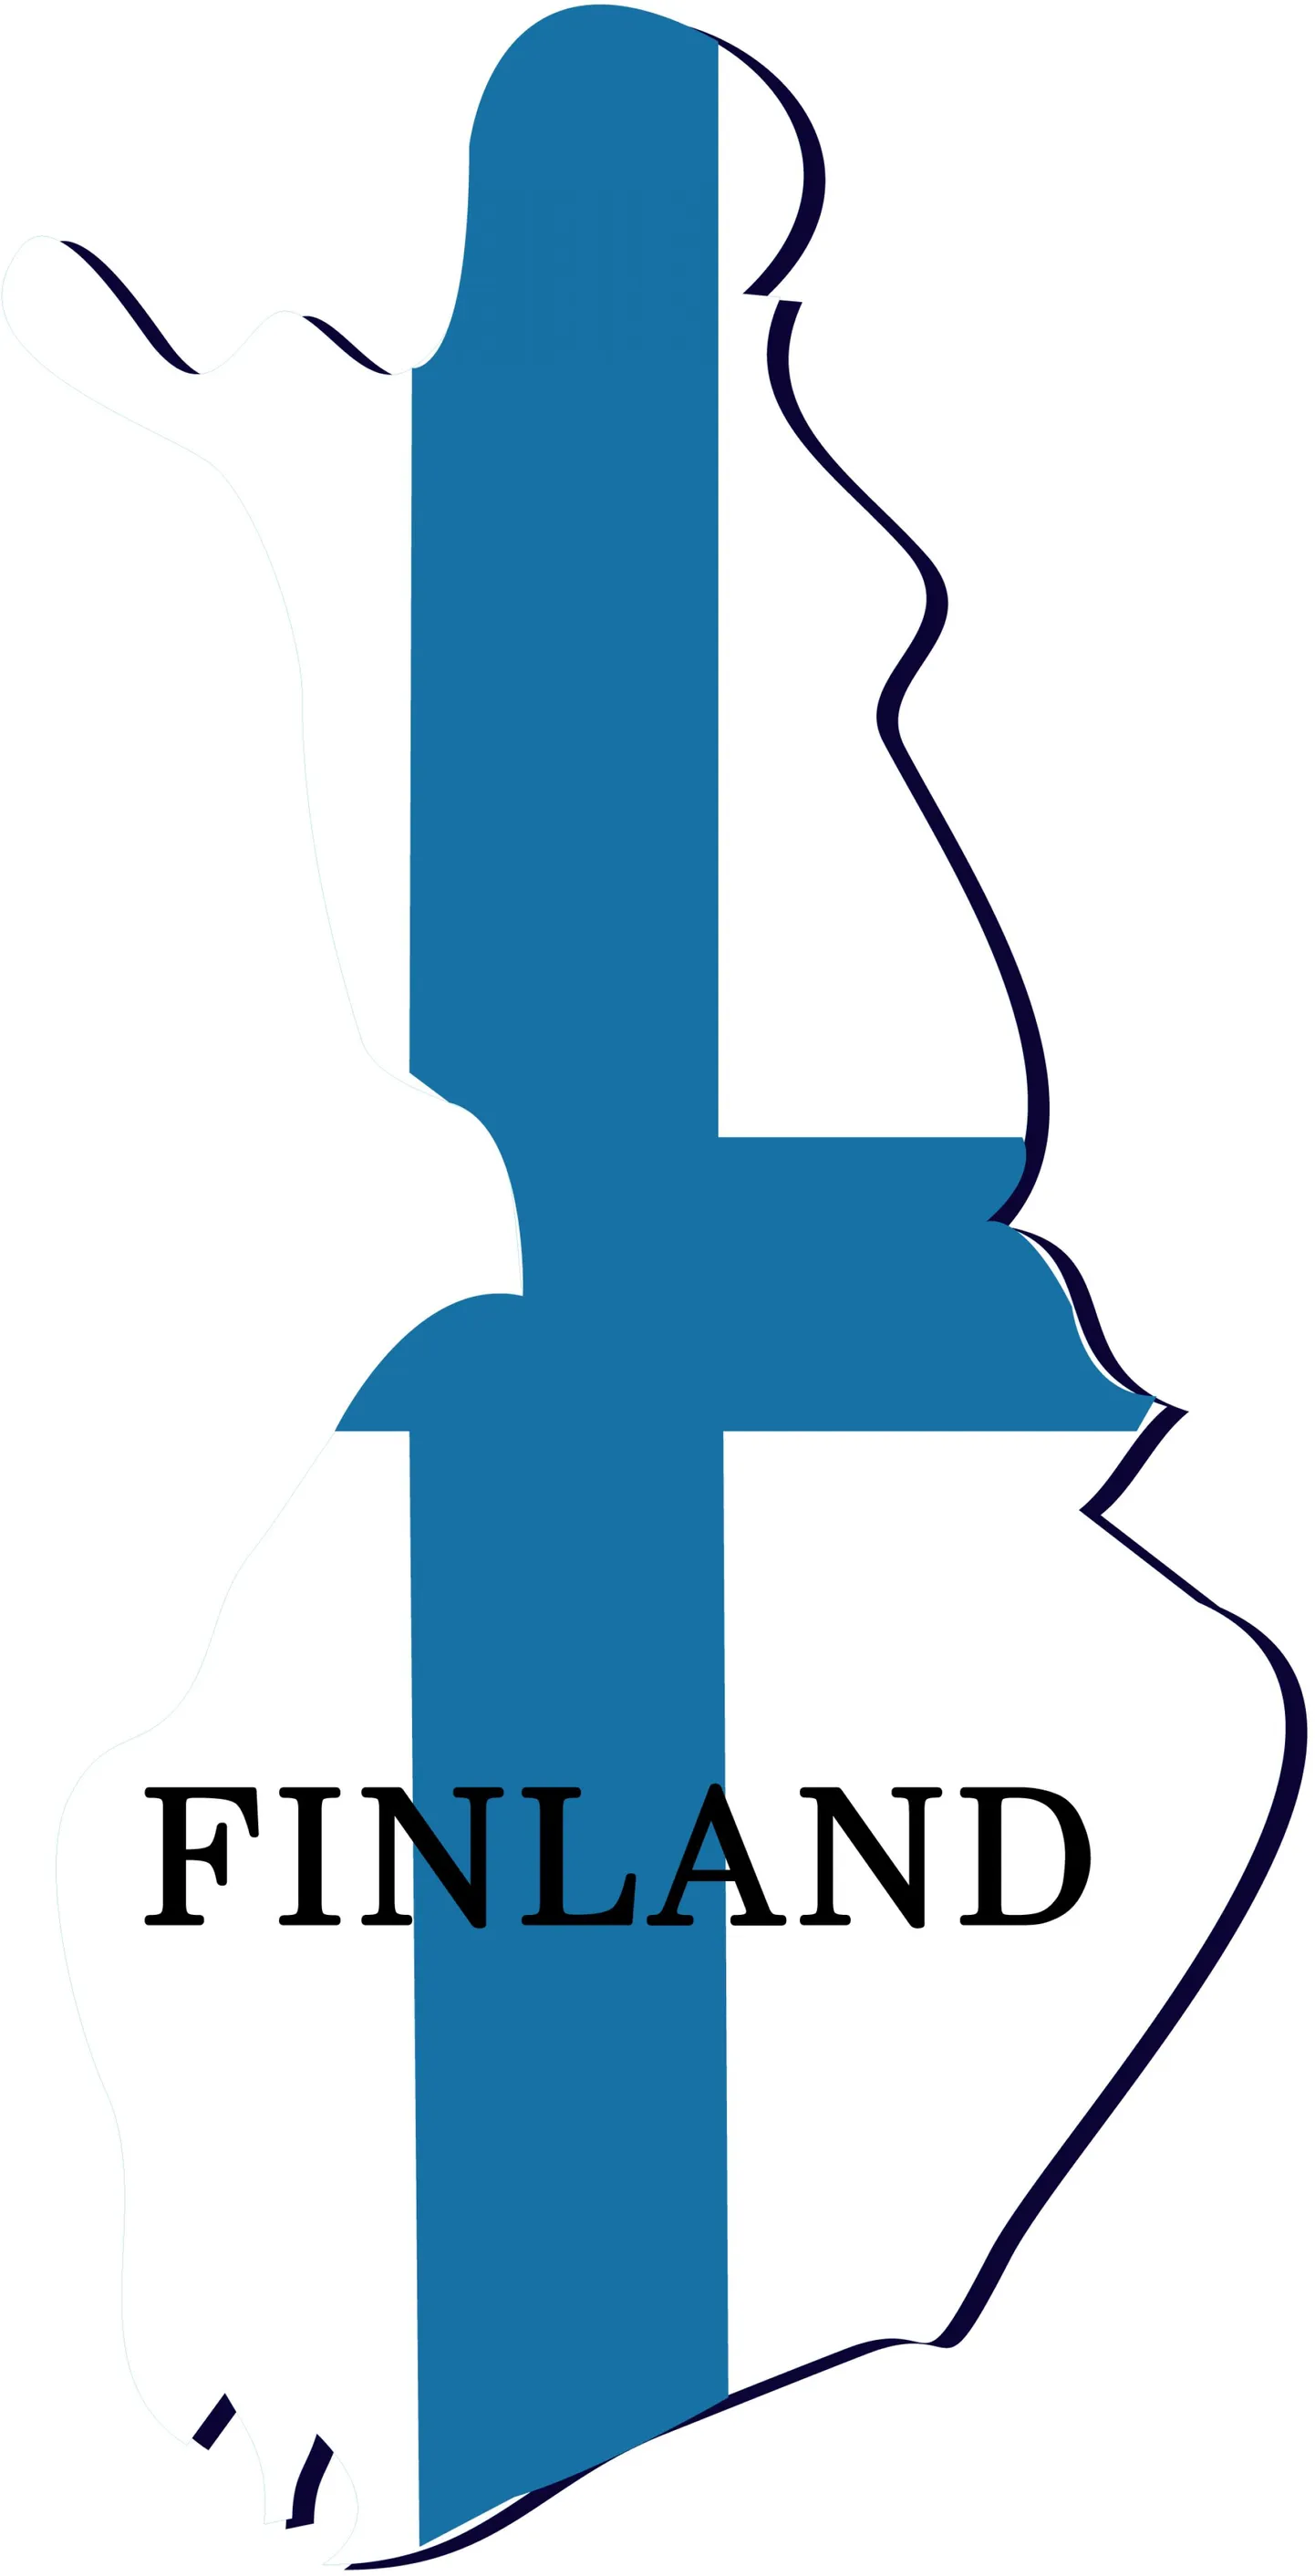 Контуры карты Финляндии и государственный флаг.